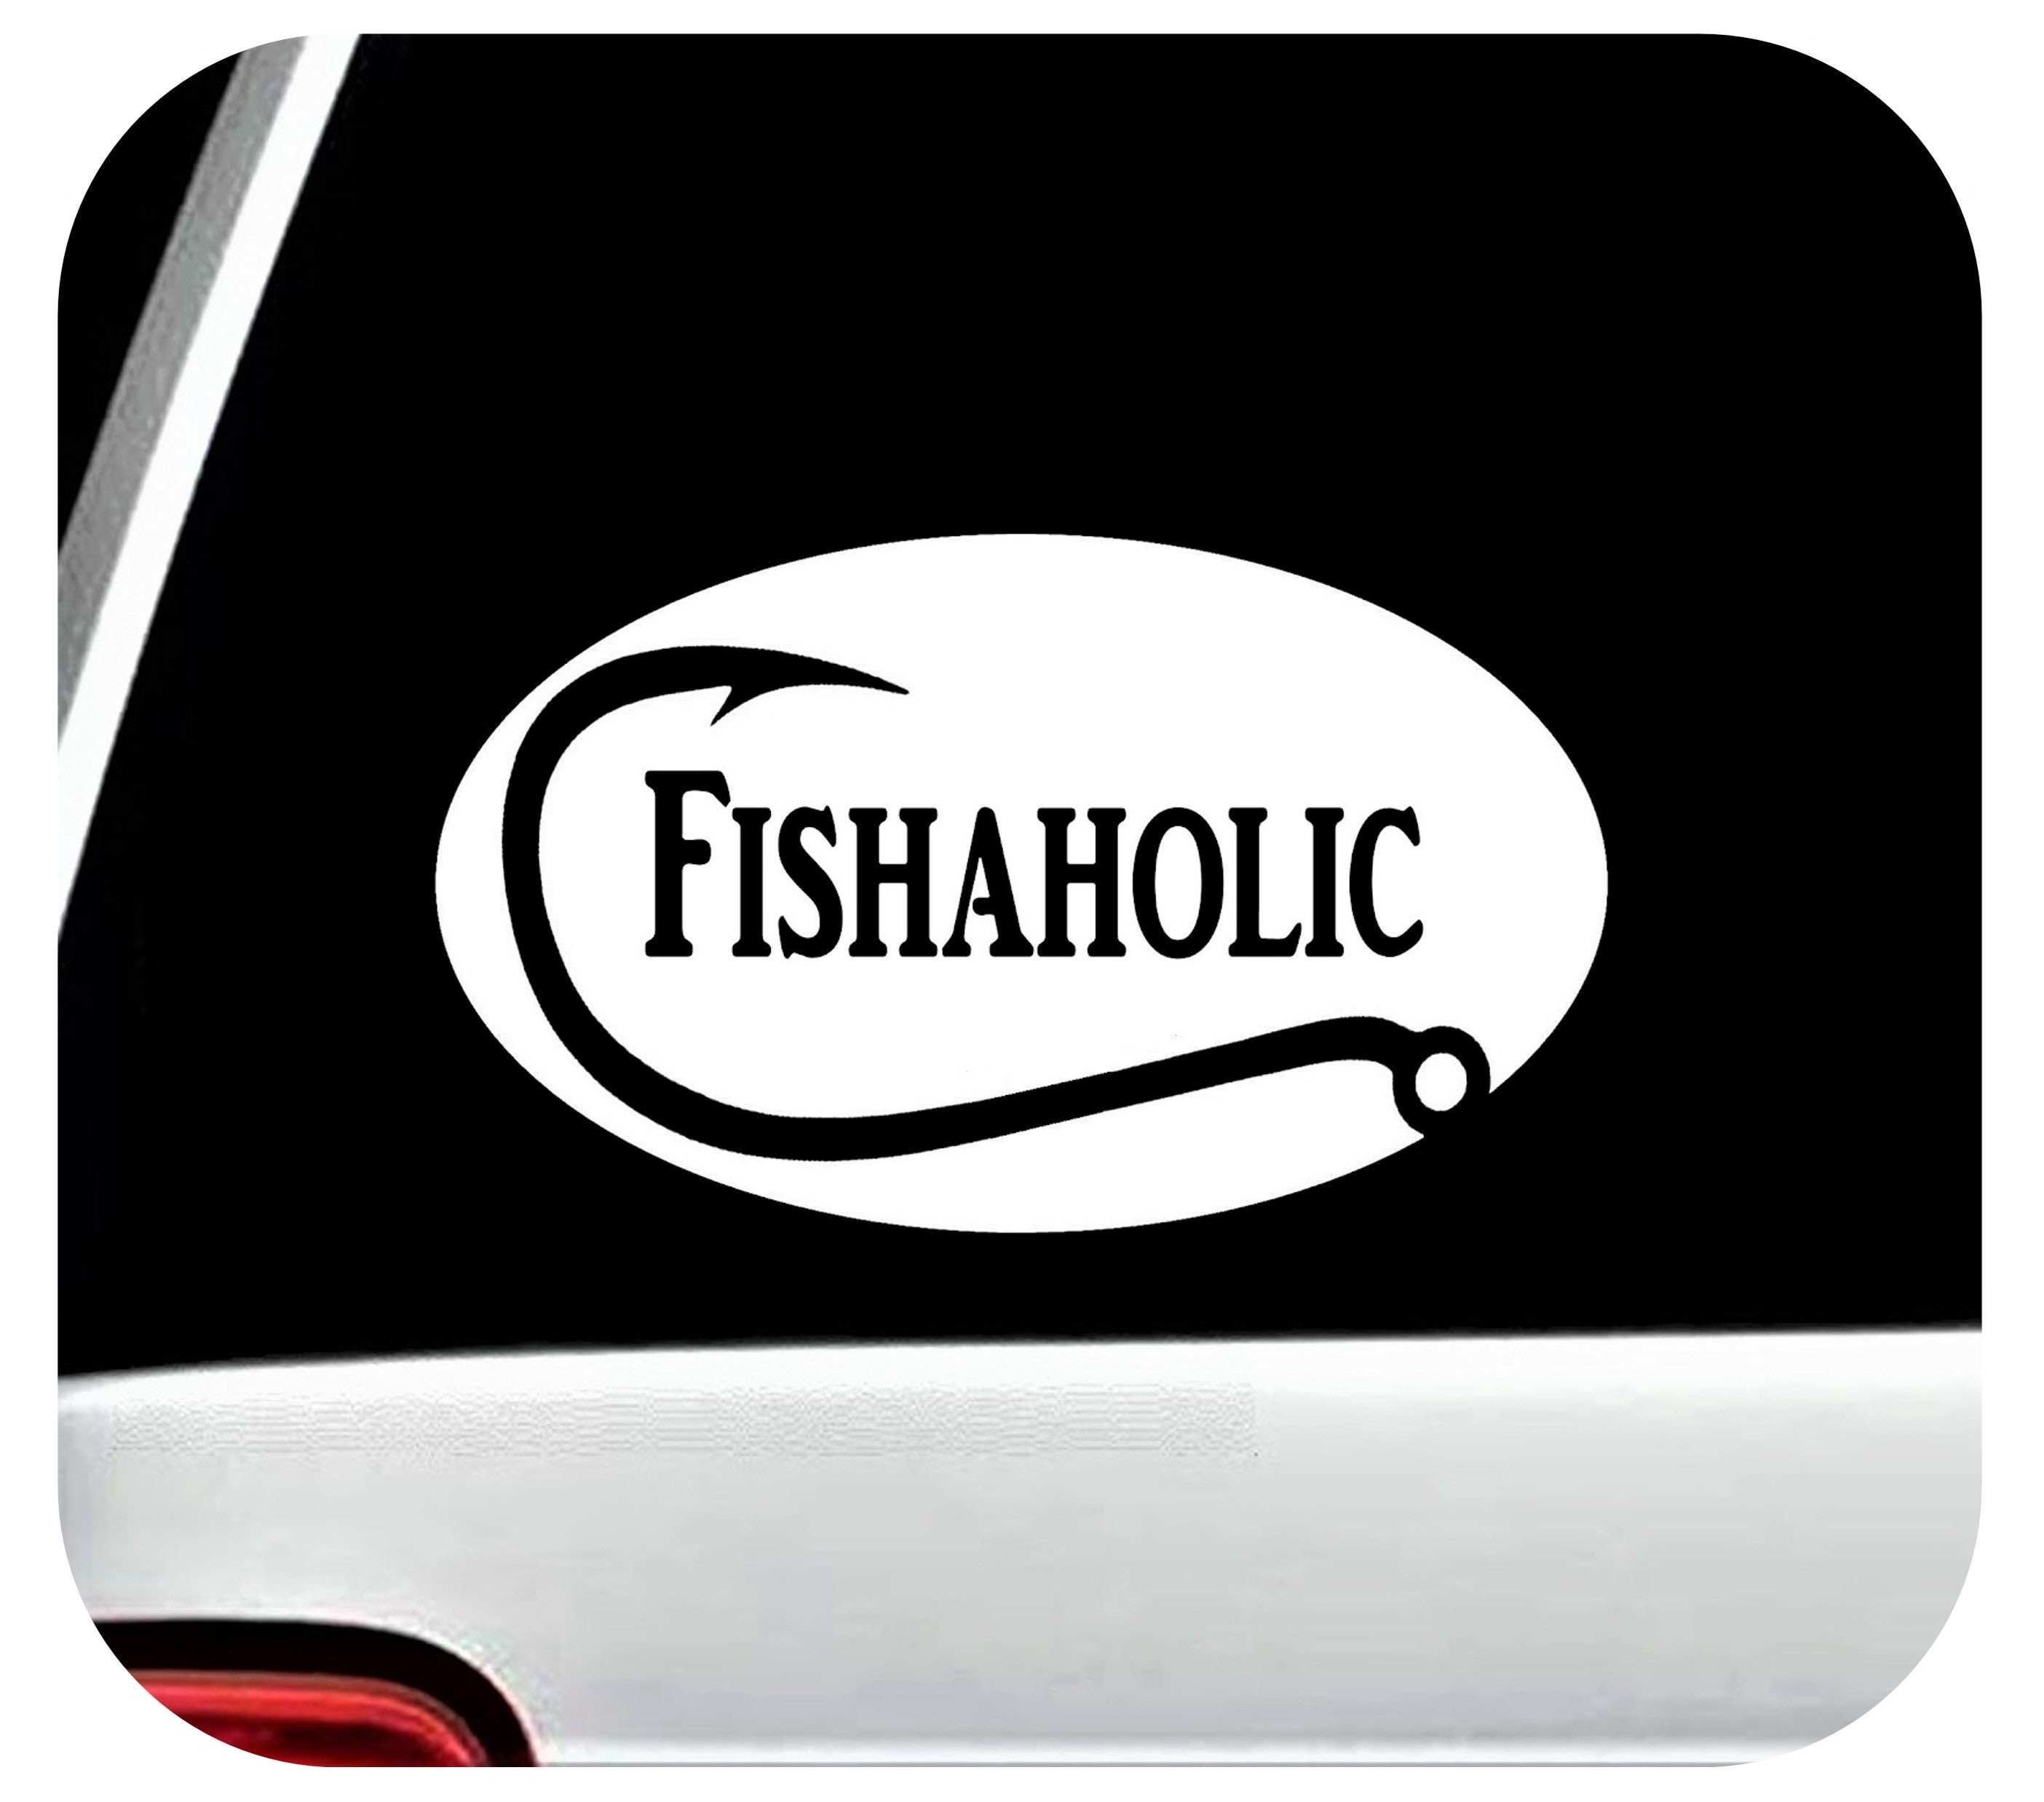 Fishaholic 